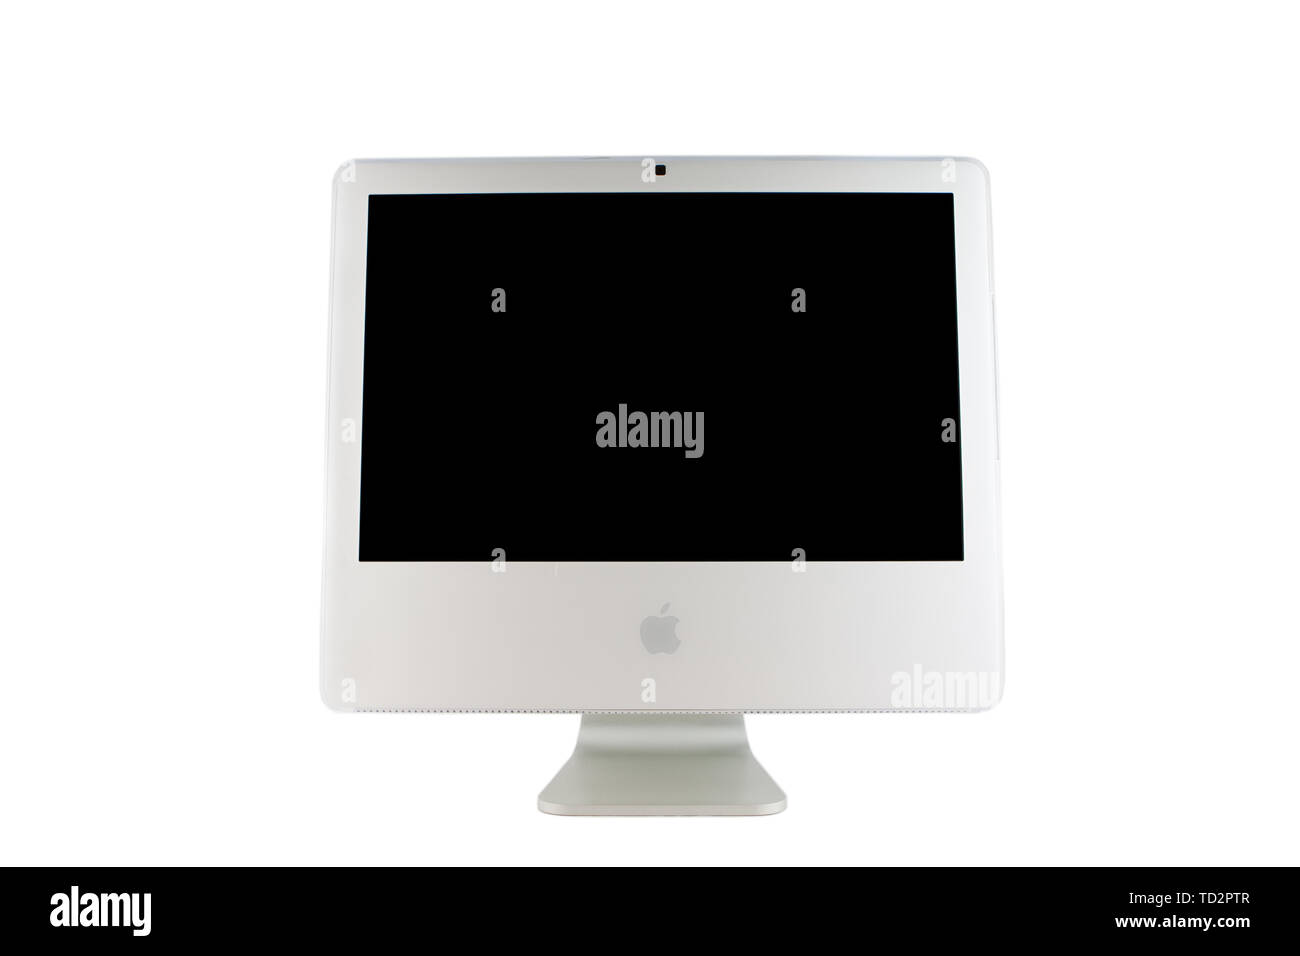 Lerwick, Shetlandinseln, Schottland, UK. 18. März 2011. Einen Apple iMac Computer fotografiert auf einem weißen Hintergrund. Stockfoto